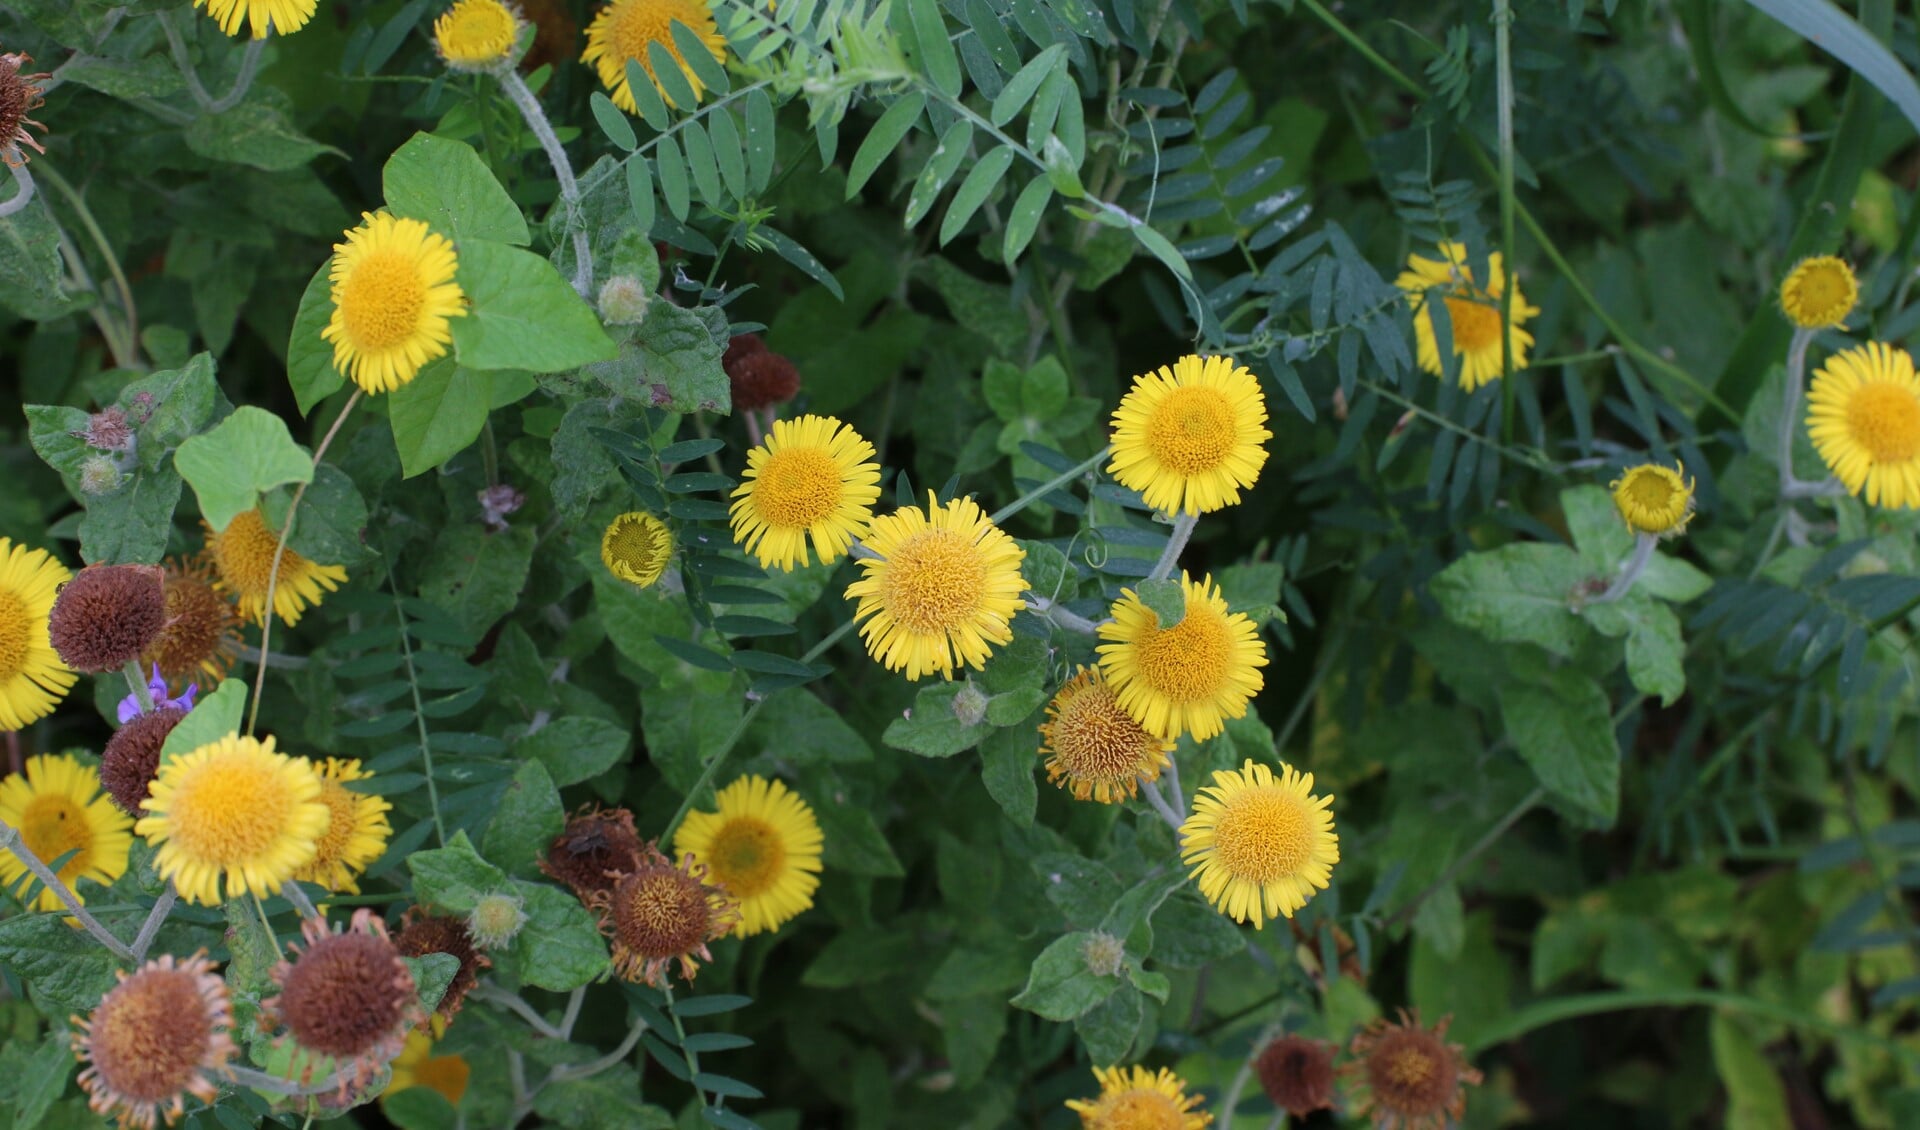 Heelblaadjes hebben gele bloemen van circa 2 centimeter diameter. (foto: Caroline Elfferich)